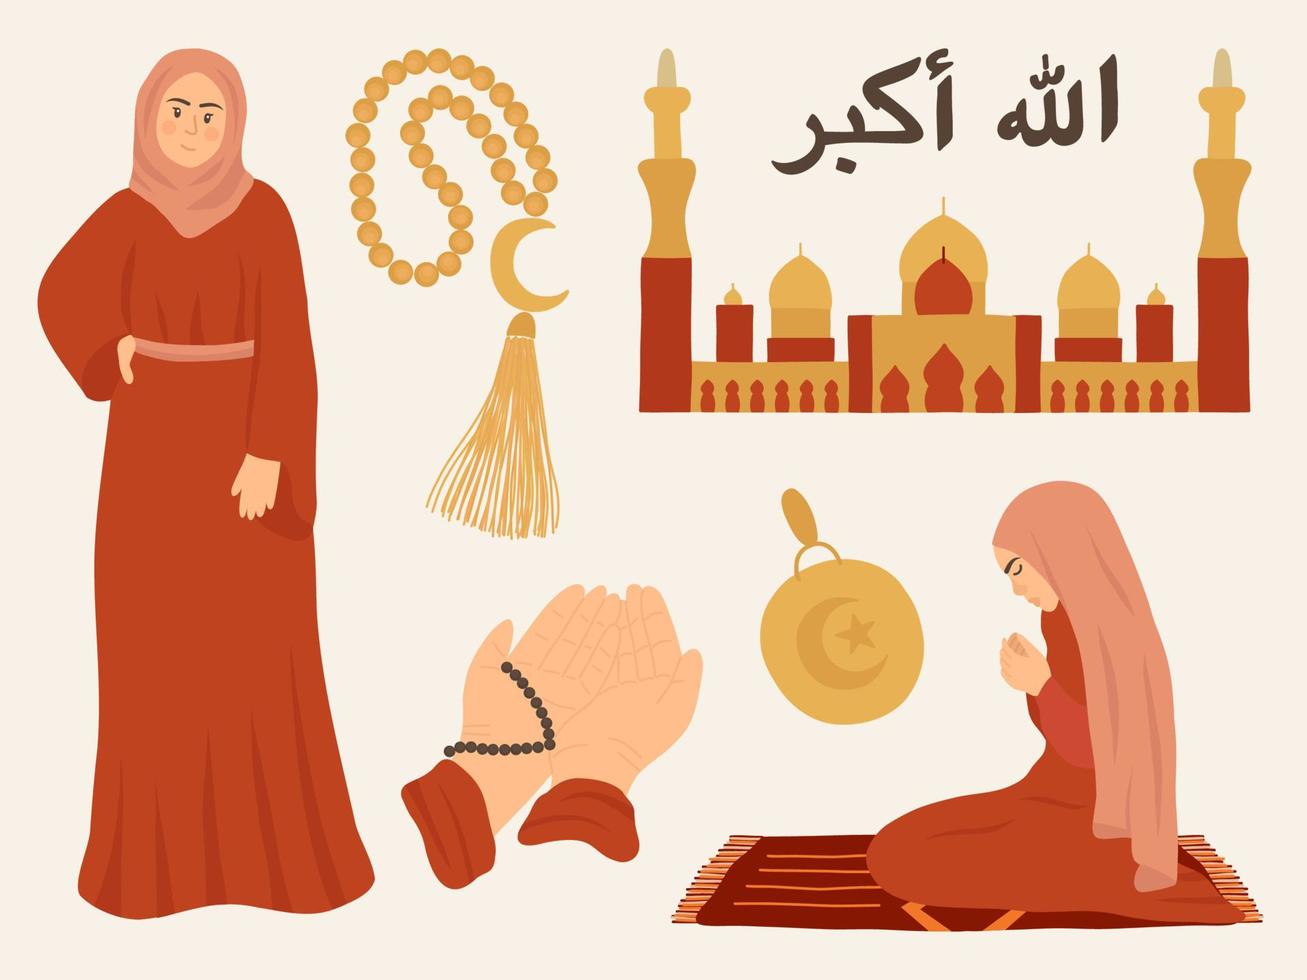 meninas muçulmanas. oração muçulmana, mesquita, ramadã. diversidade igualdade inclusão. caligrafia islâmica. vetor